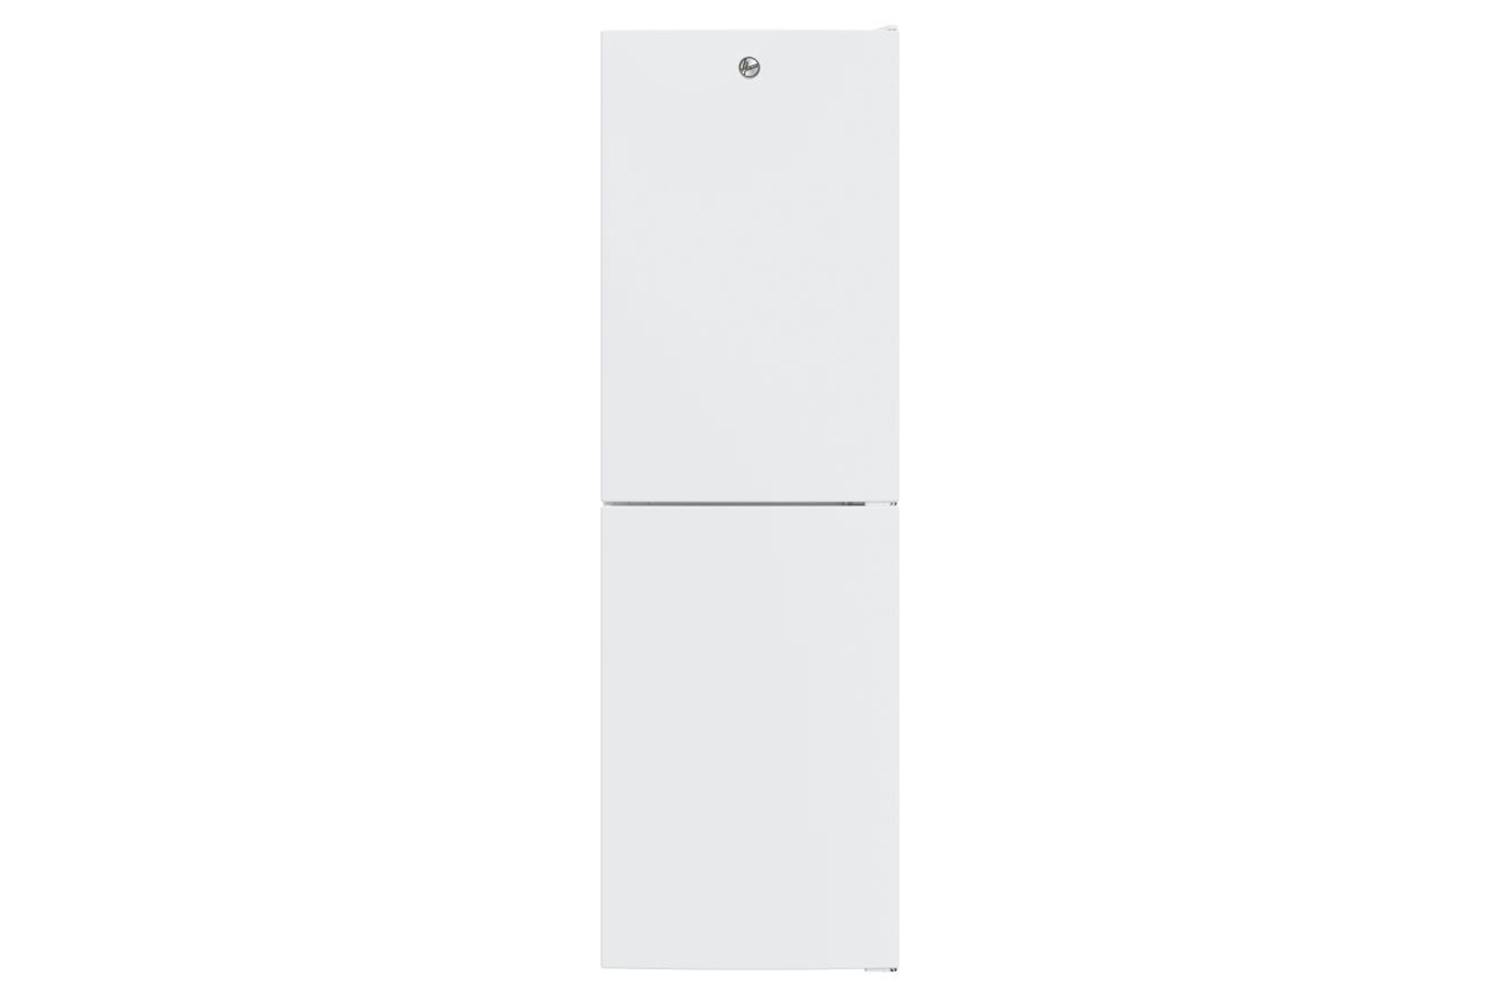 Hoover Freestanding Fridge Freezer | 34005037 | White